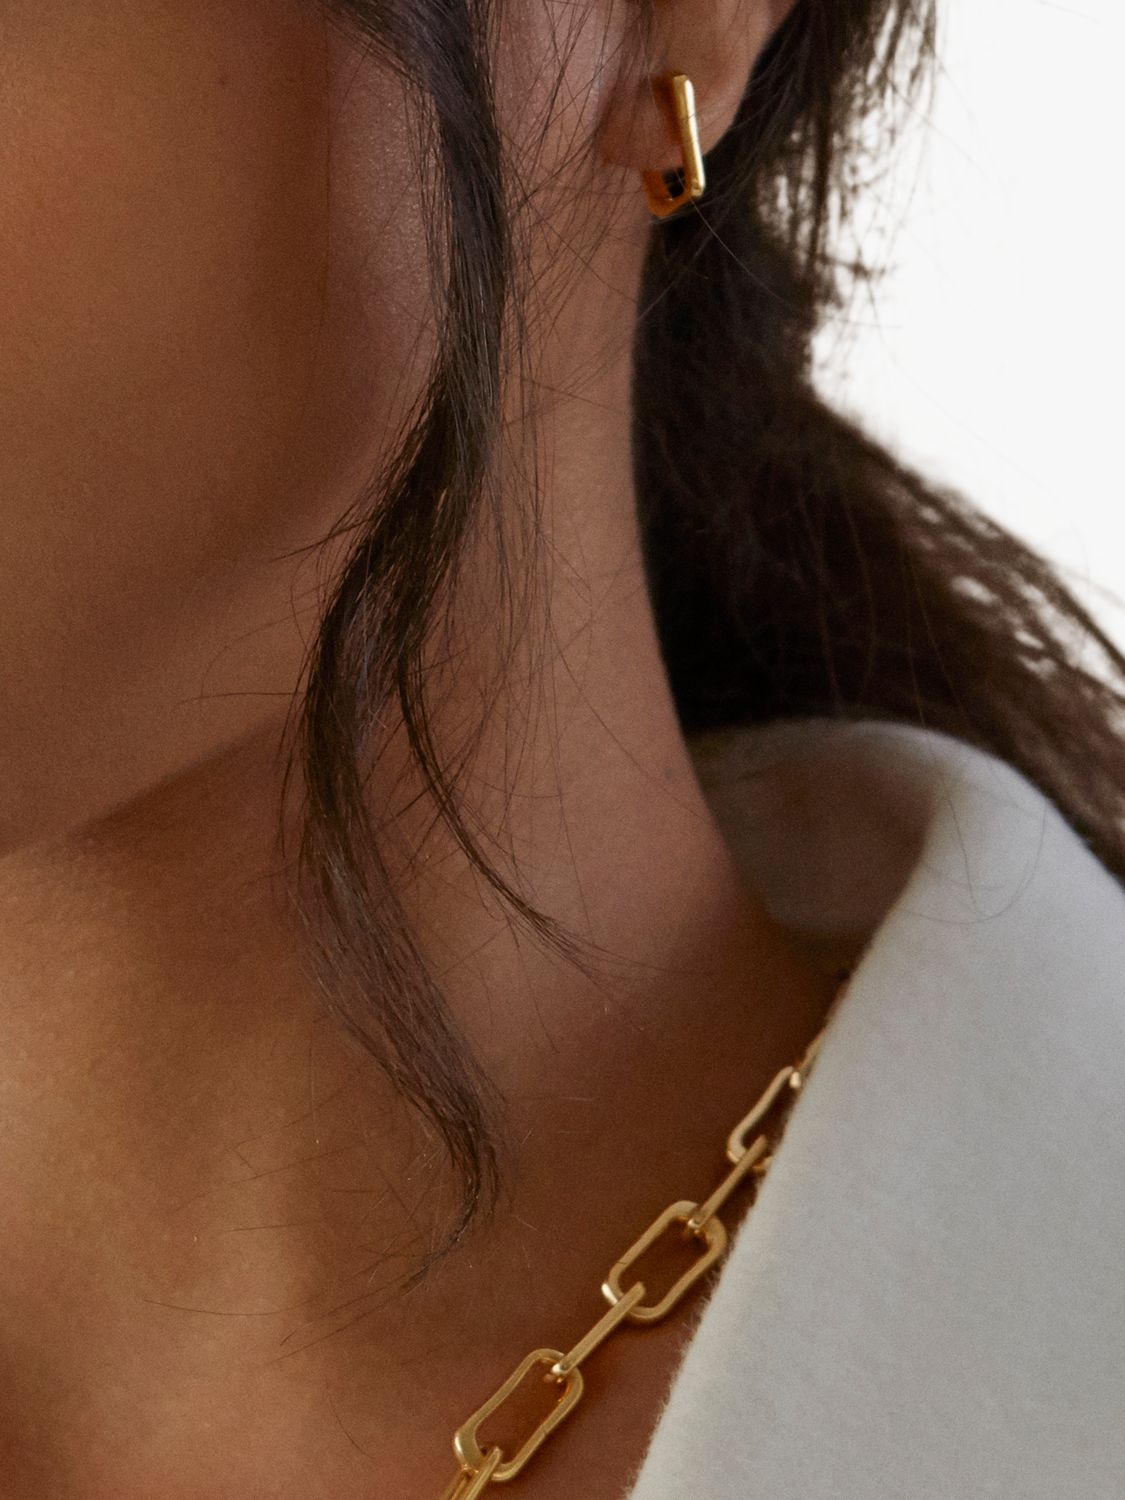 Buy Monica Vinader Alta Capture Pearl Huggie Earrings, Gold Online at johnlewis.com